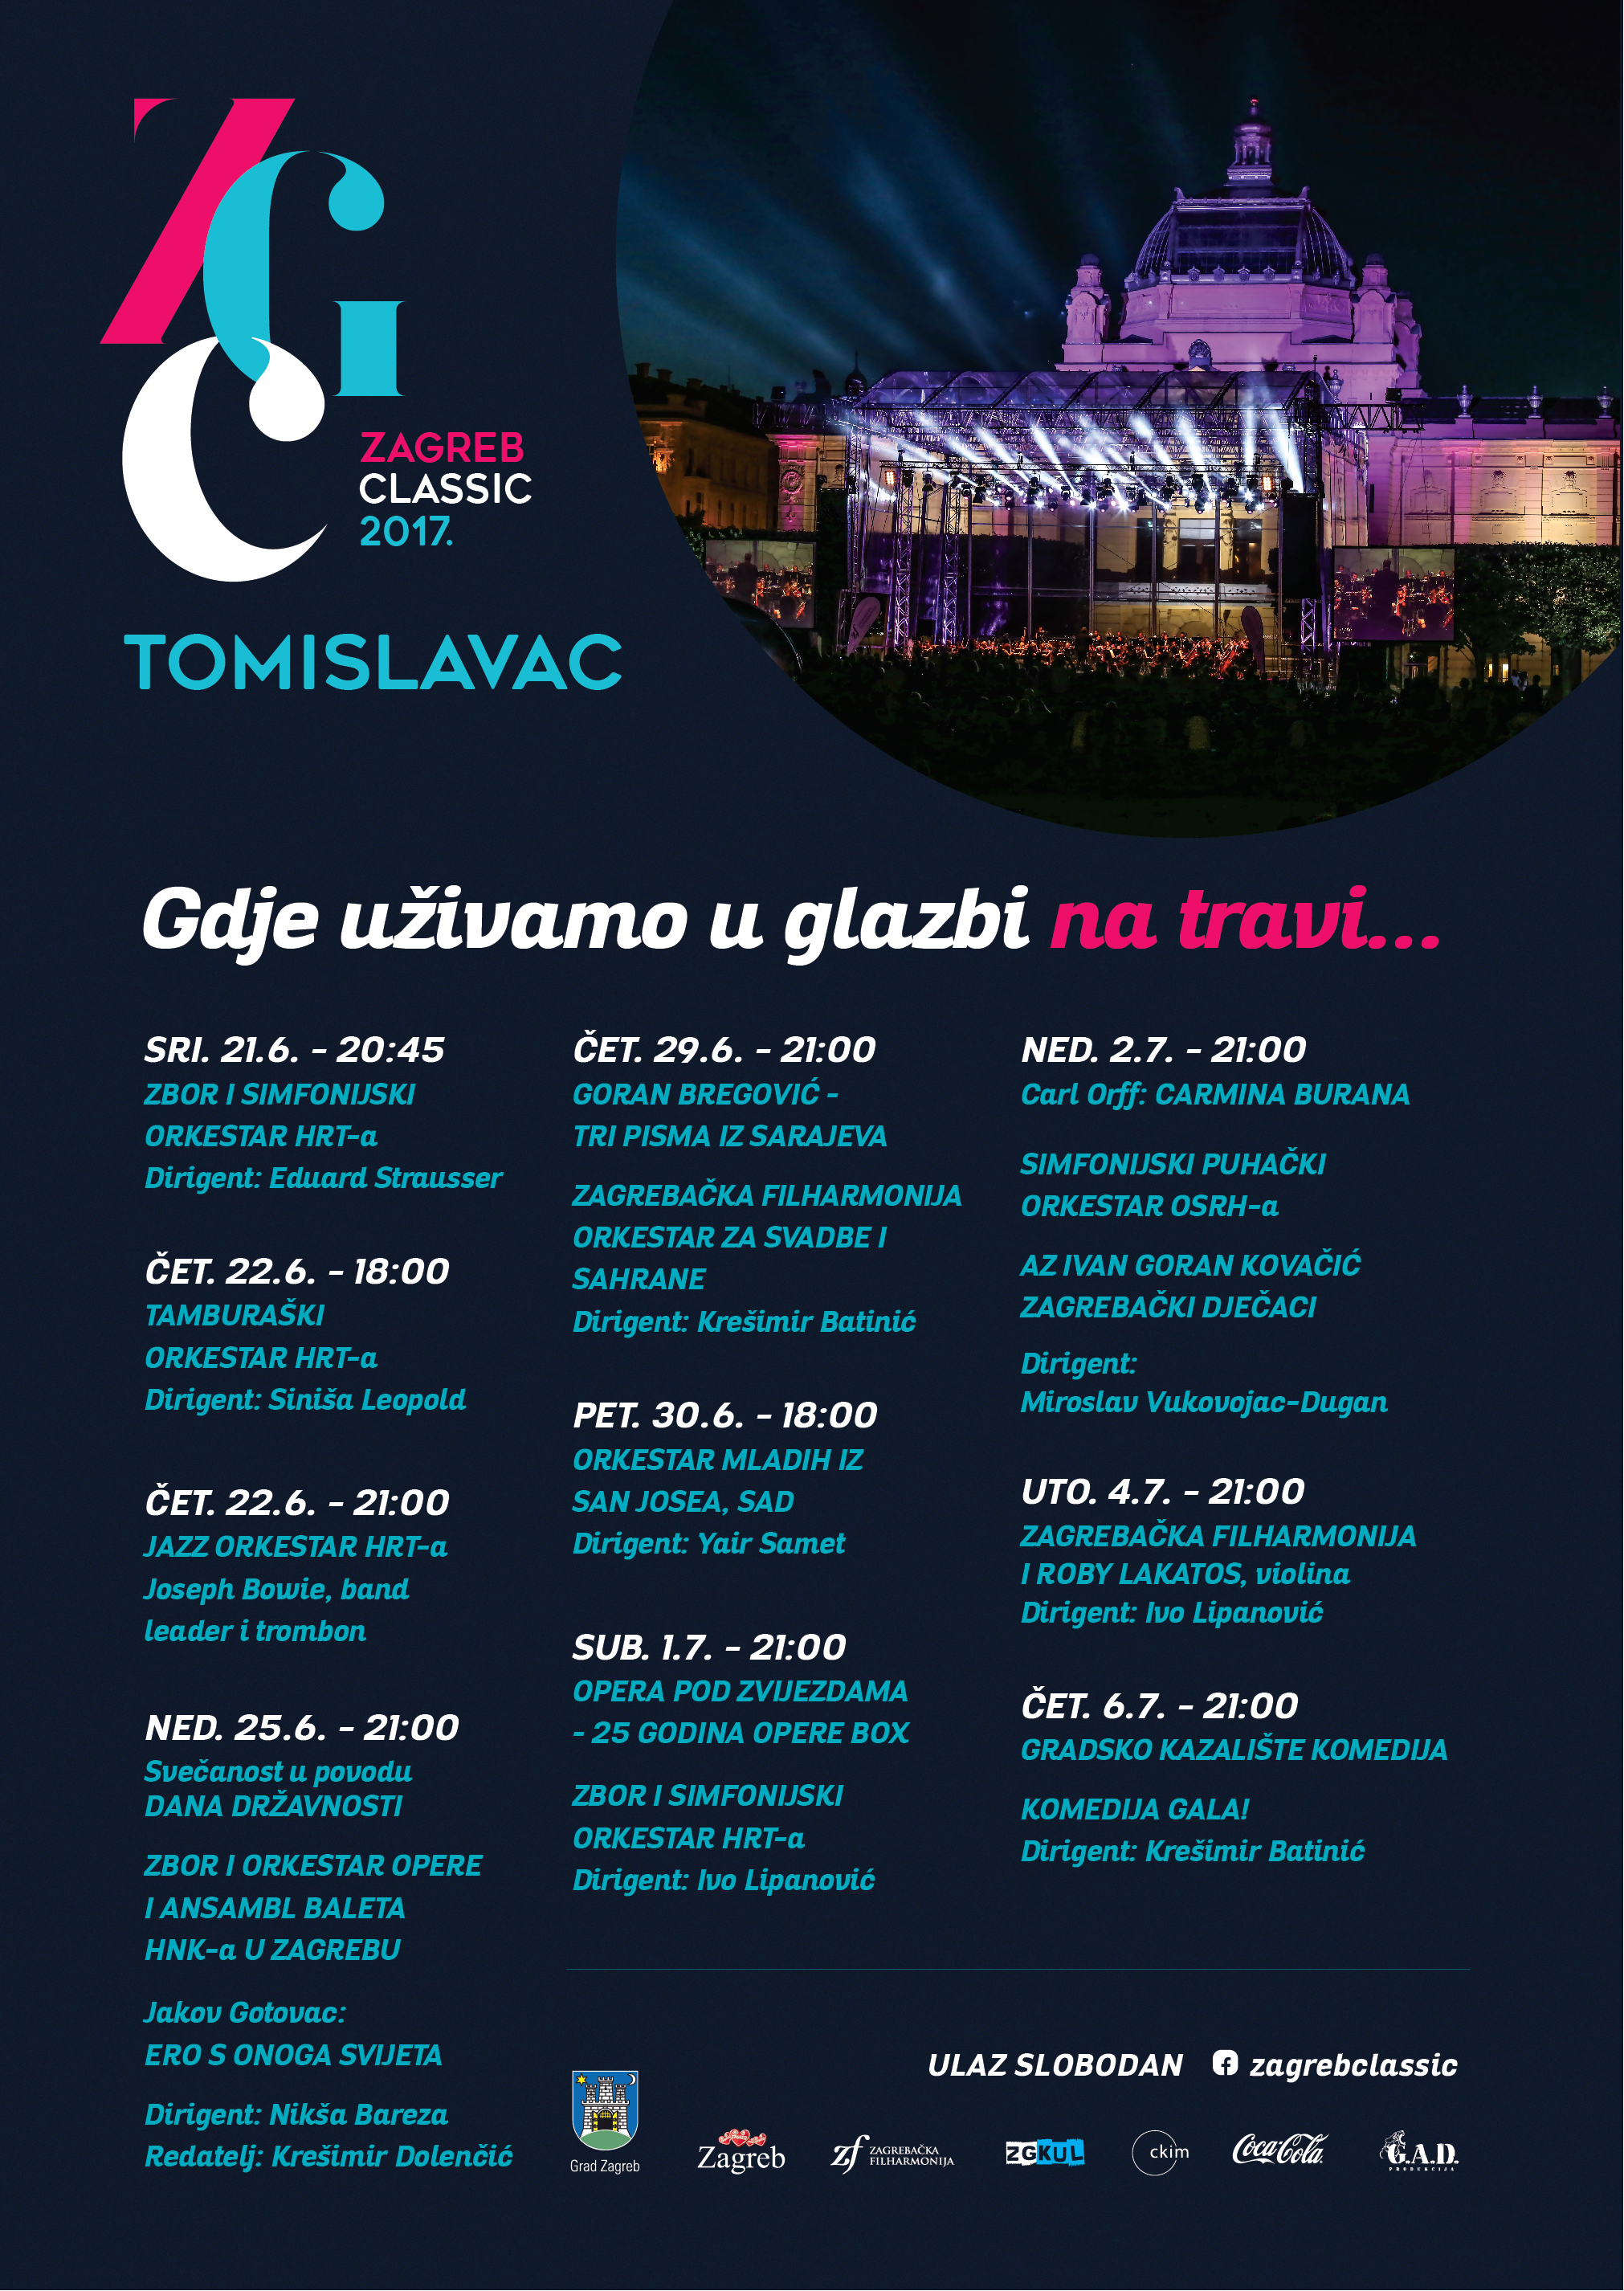 KOMEDIJA GALA - Koncert Kazališta "Komedija" u sklopu Festivala Zagreb Classic